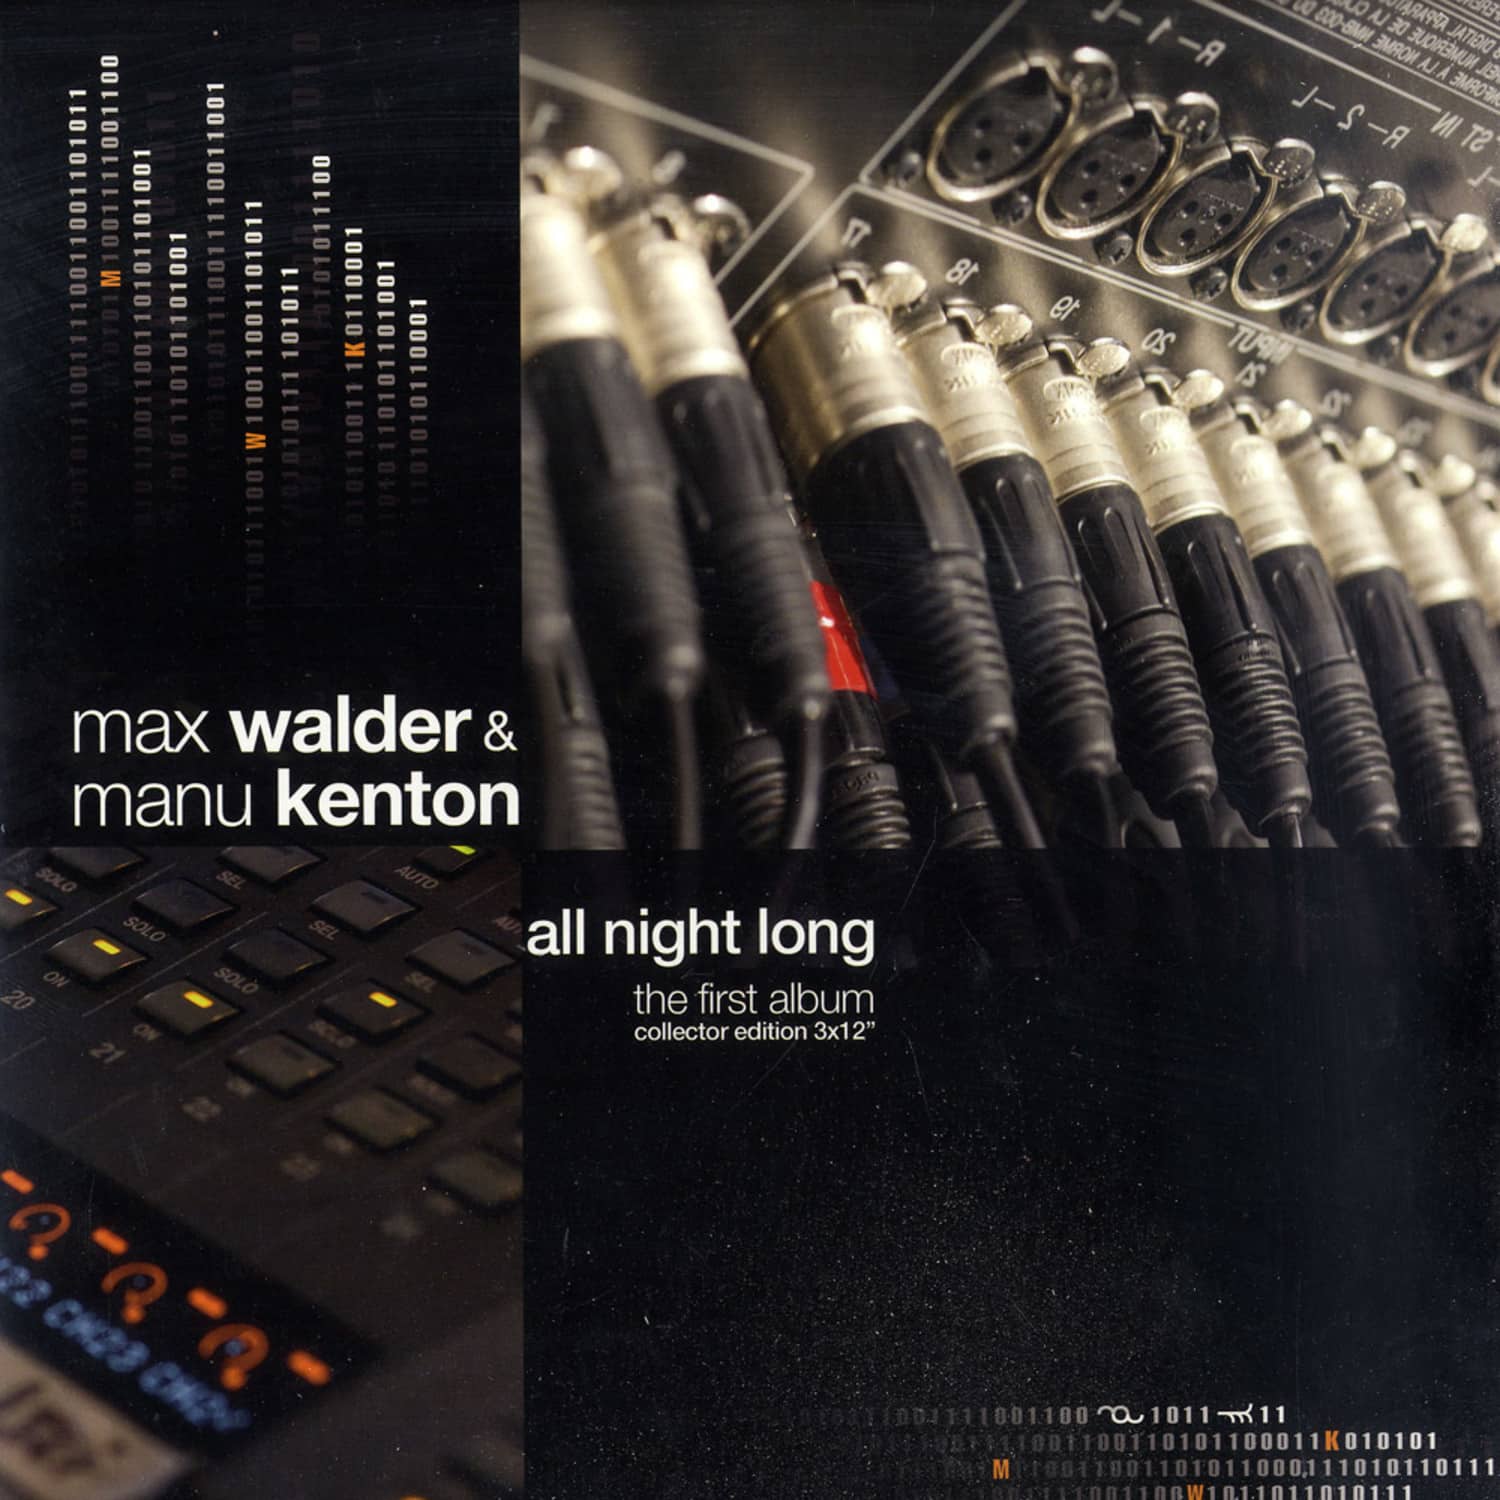 Max Walder & Manu Kenton - ALL NIGHT LONG 